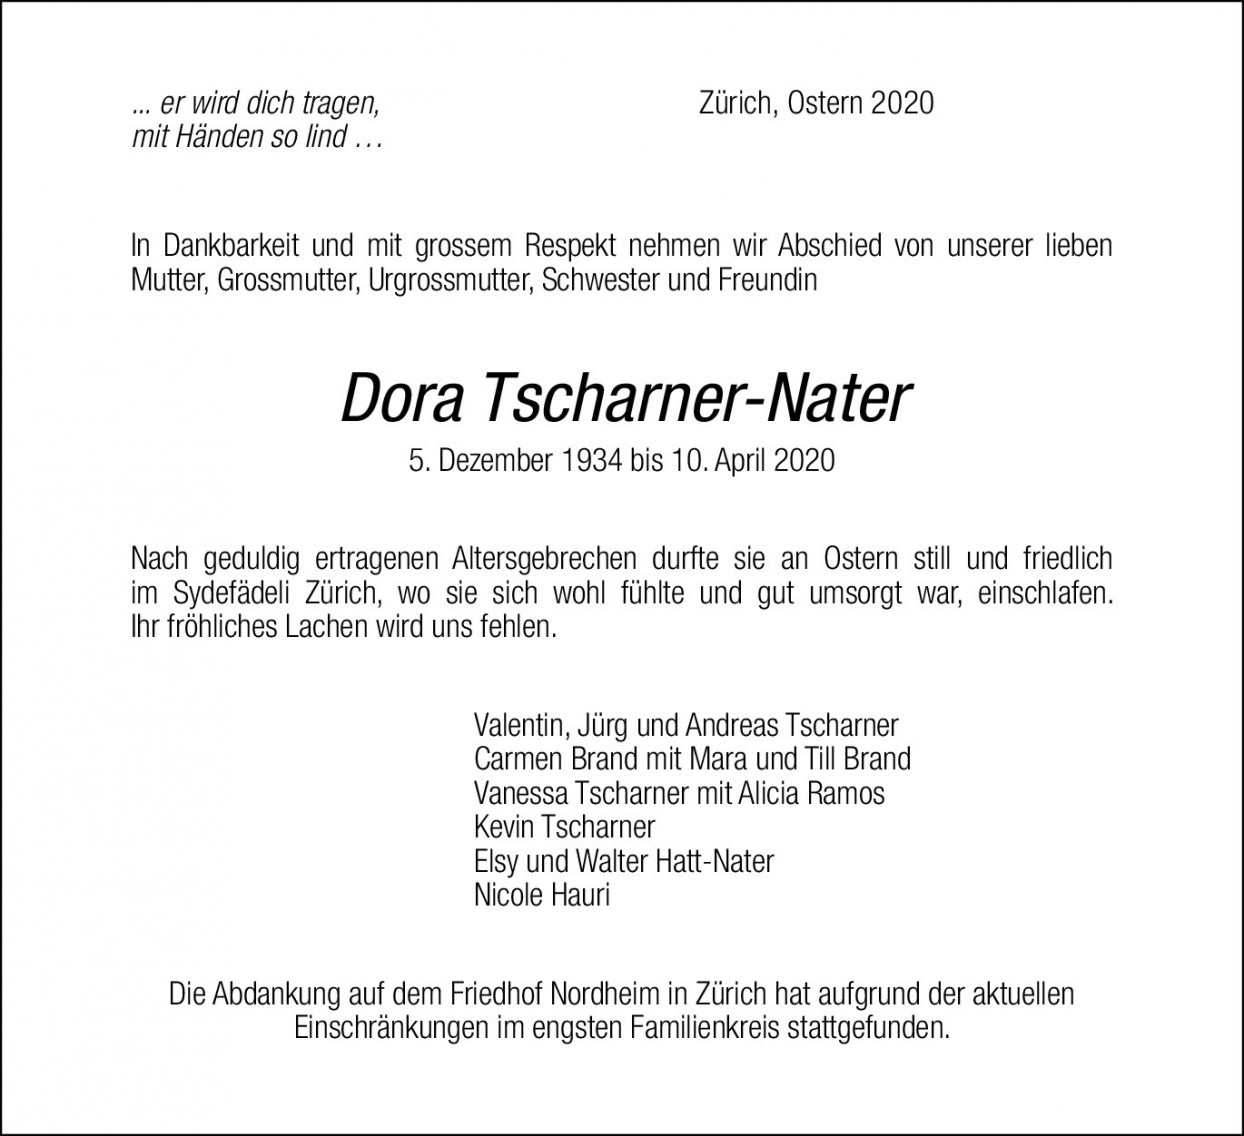 Dora Tscharner-Nater